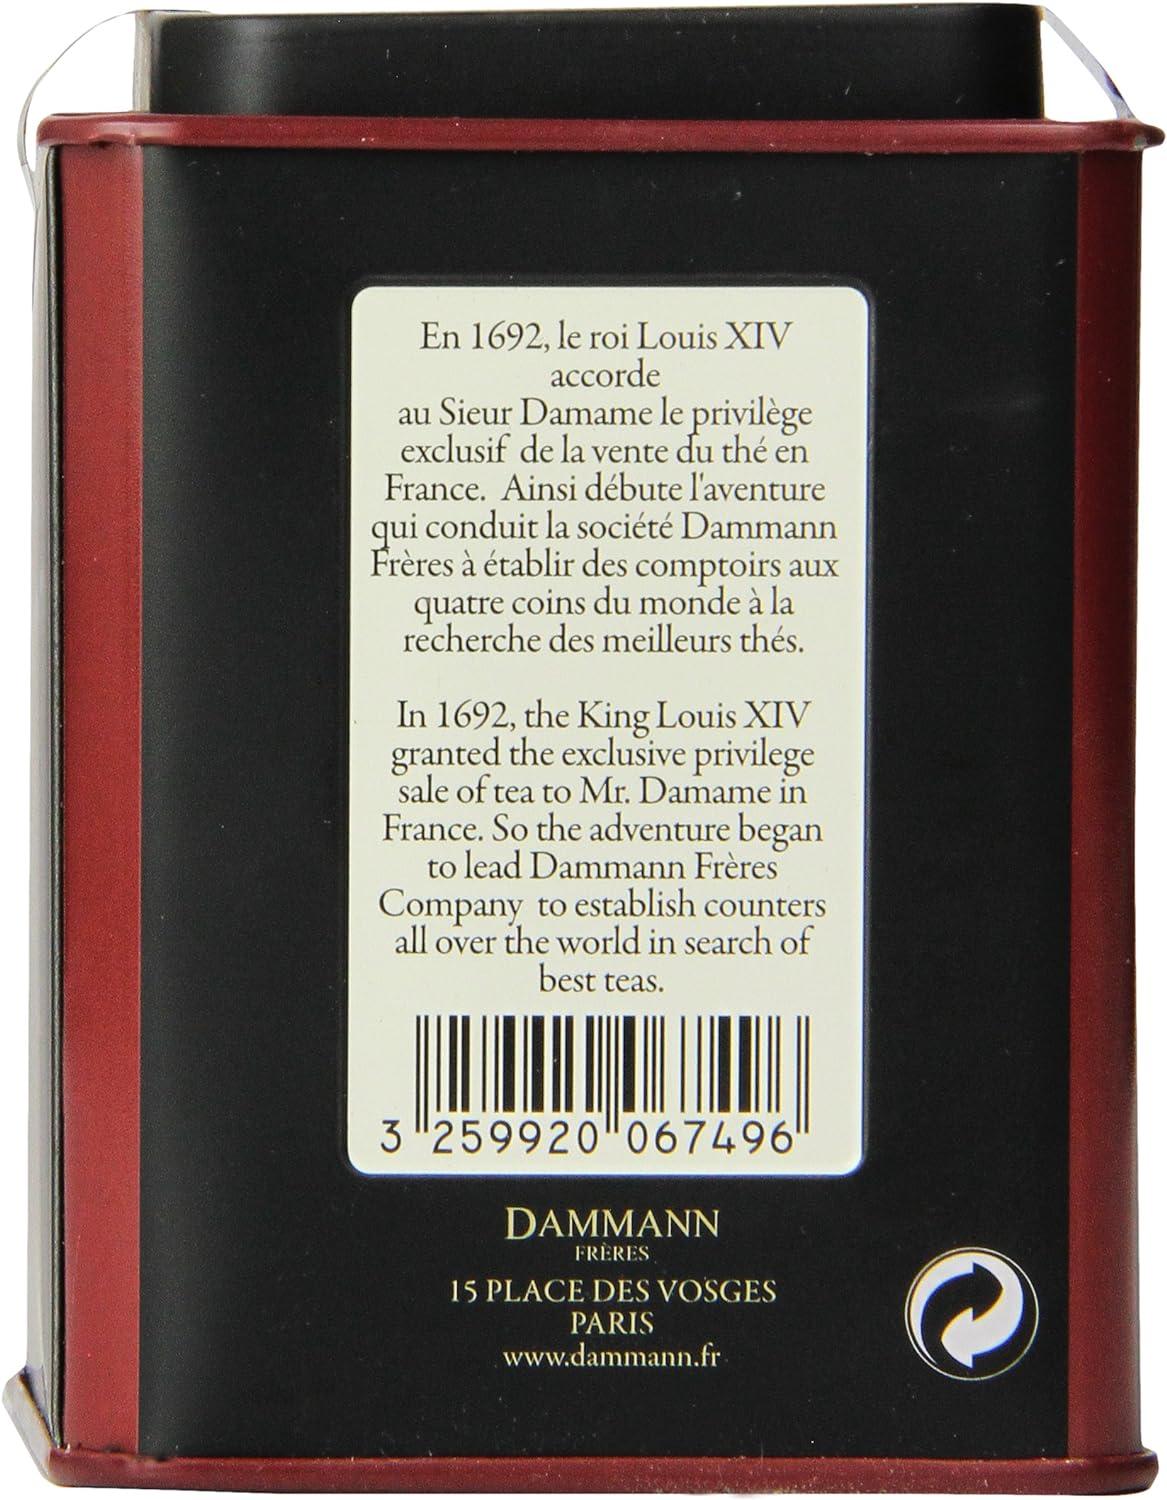 Dammann Teas 4 - 4 fruits reds 100 g Tin